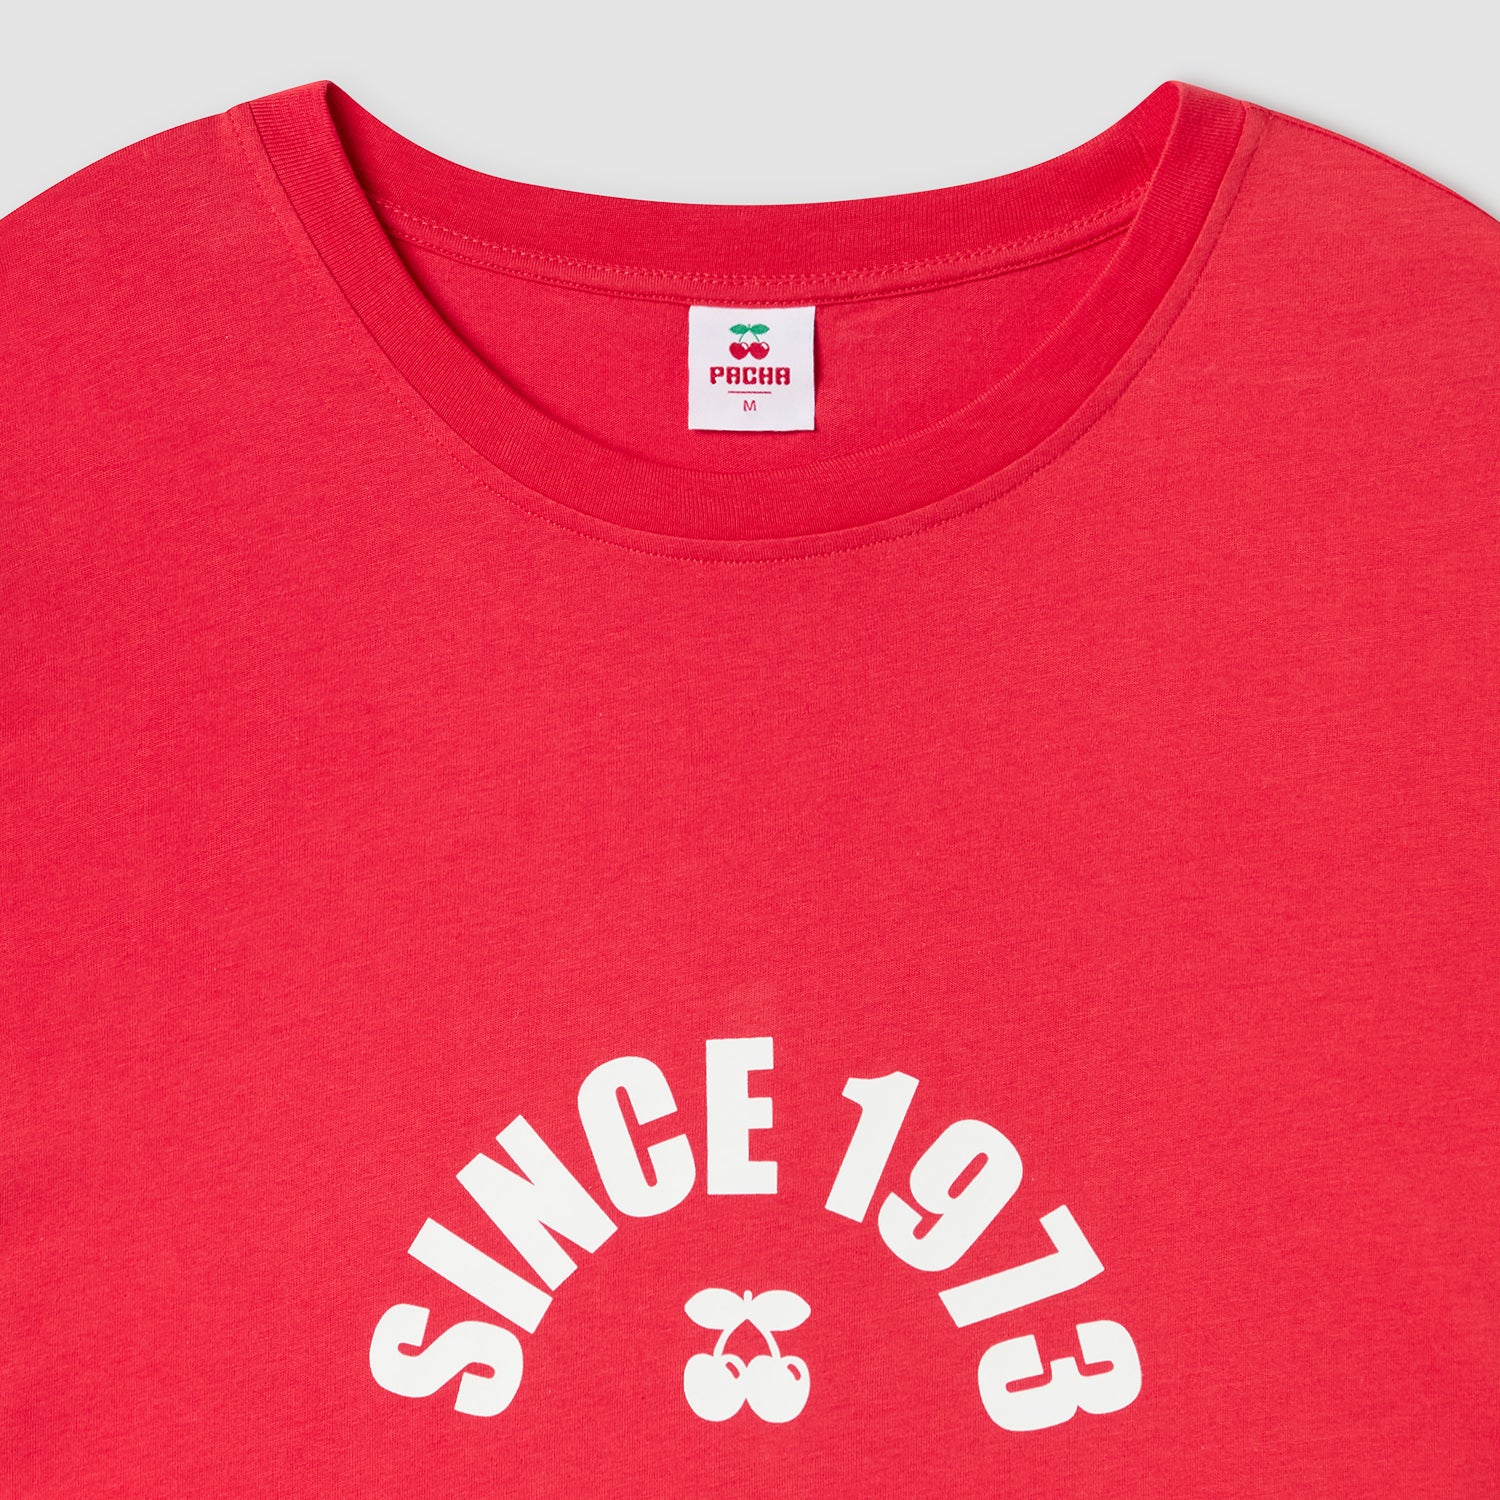 Since 1973 T-shirt